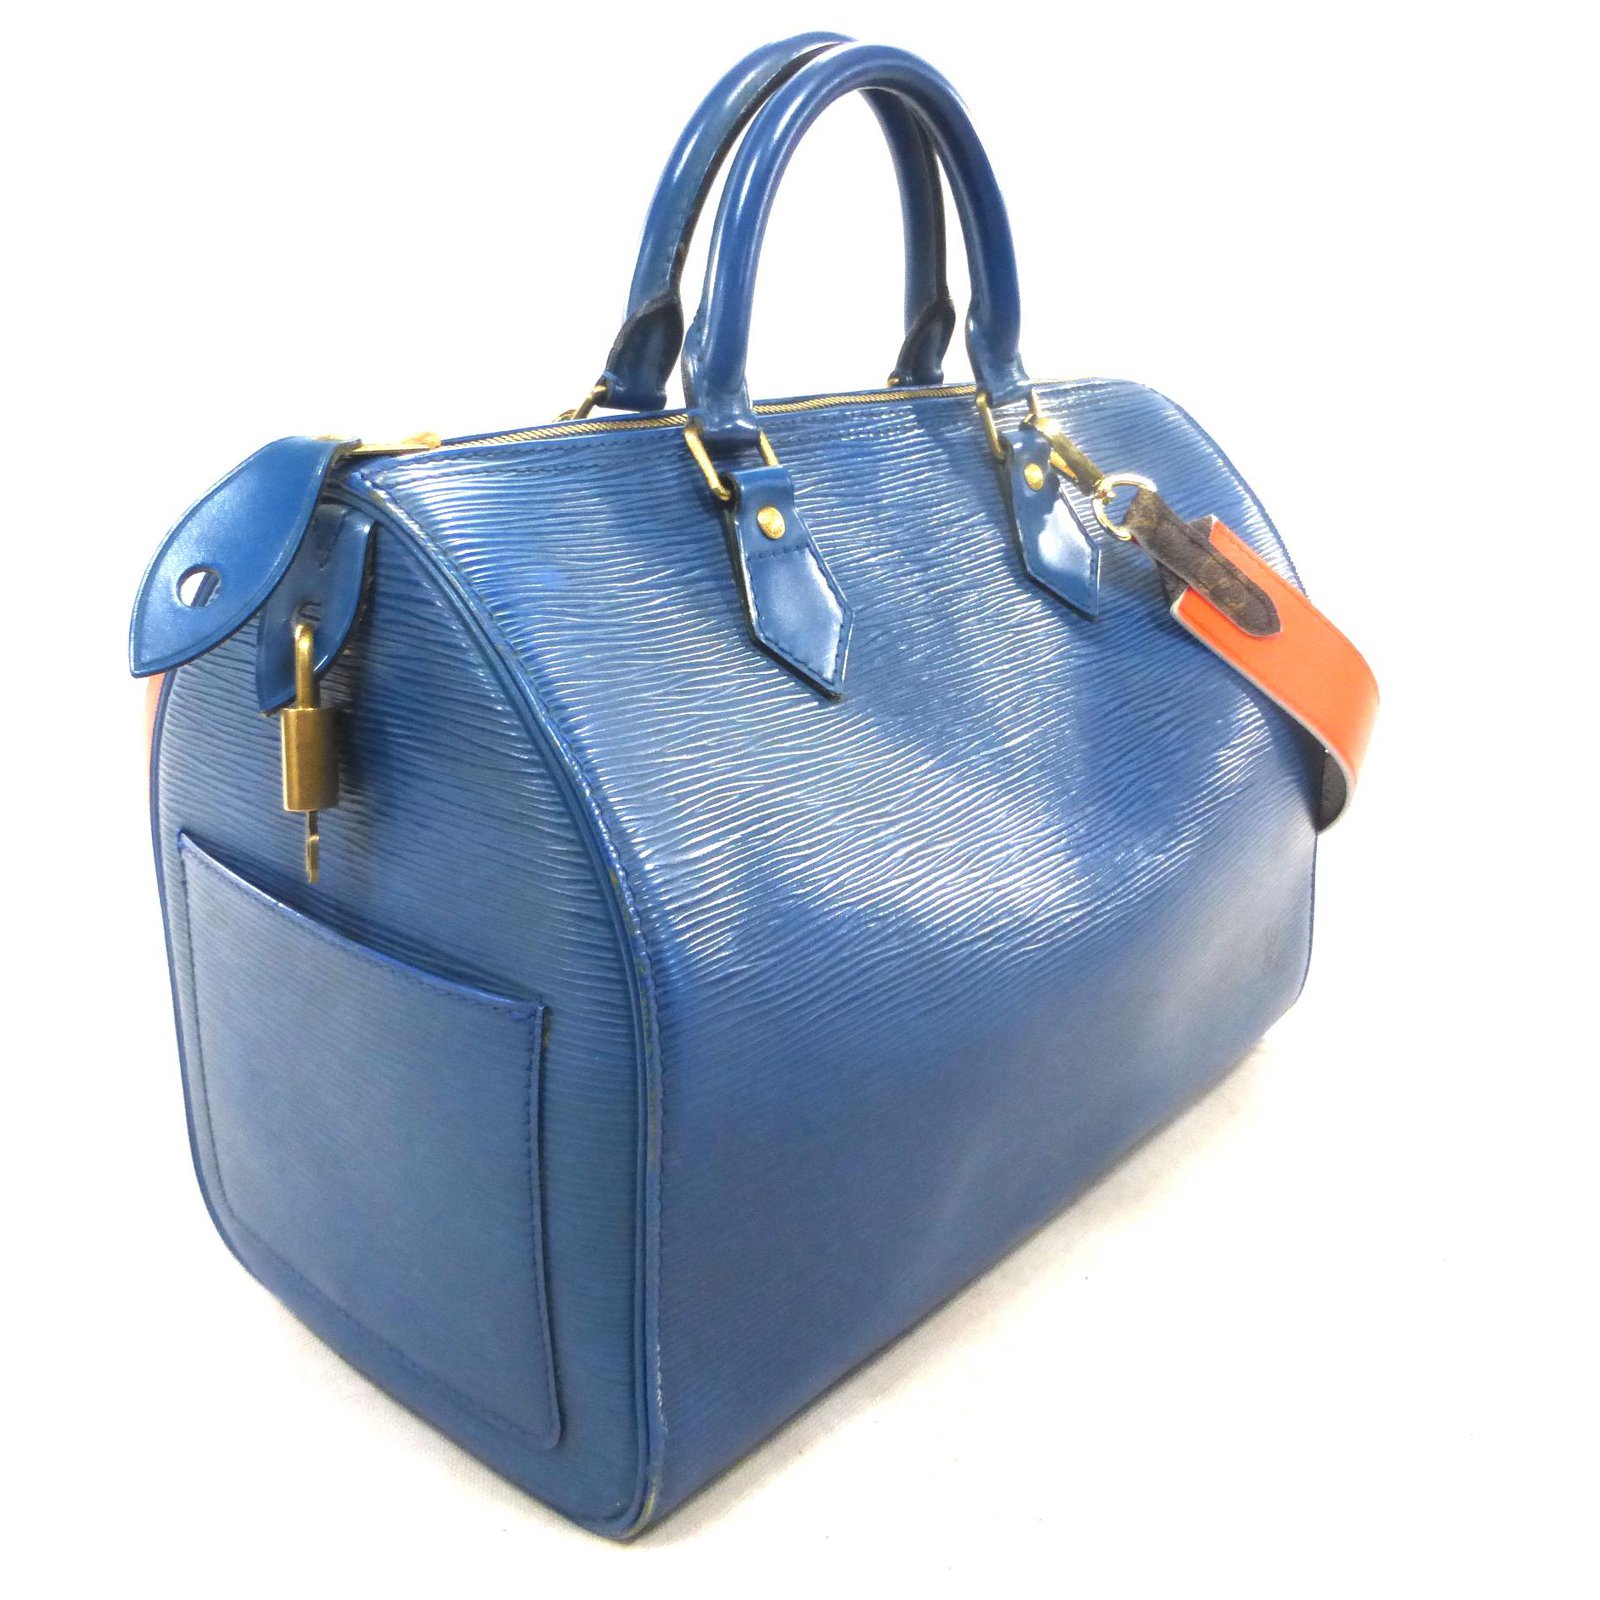 Louis Vuitton Speedy 30 blue epi leather + monogram / orange